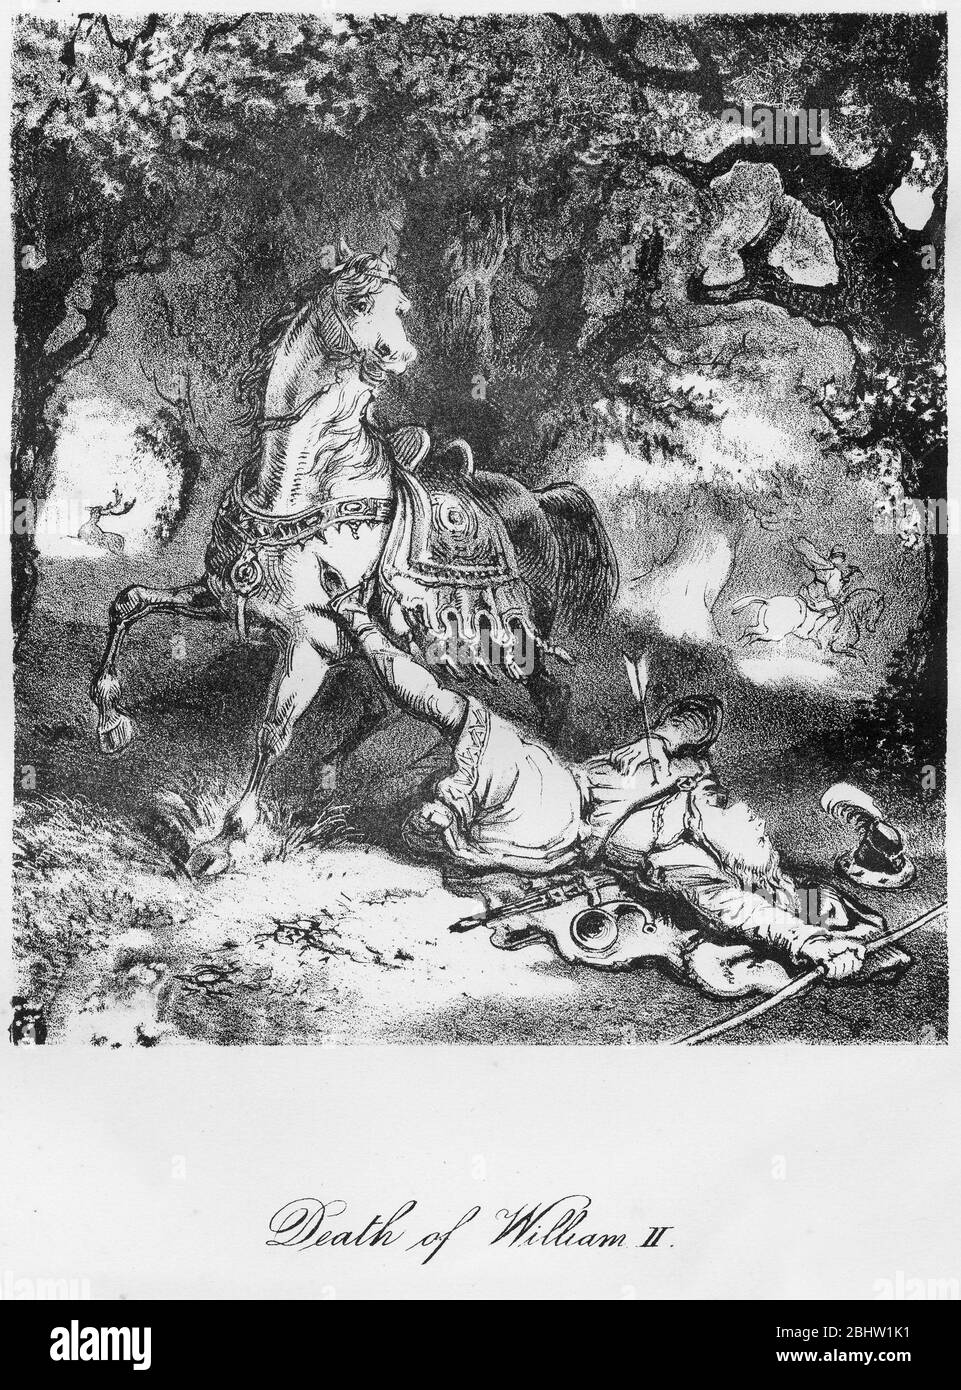 Grabado del rey Guillermo II de Inglaterra (c. 1056-1100), que murió de ser golpeado con una flecha mientras cazaba. La imagen implica que la muerte no fue accidental. Foto de stock